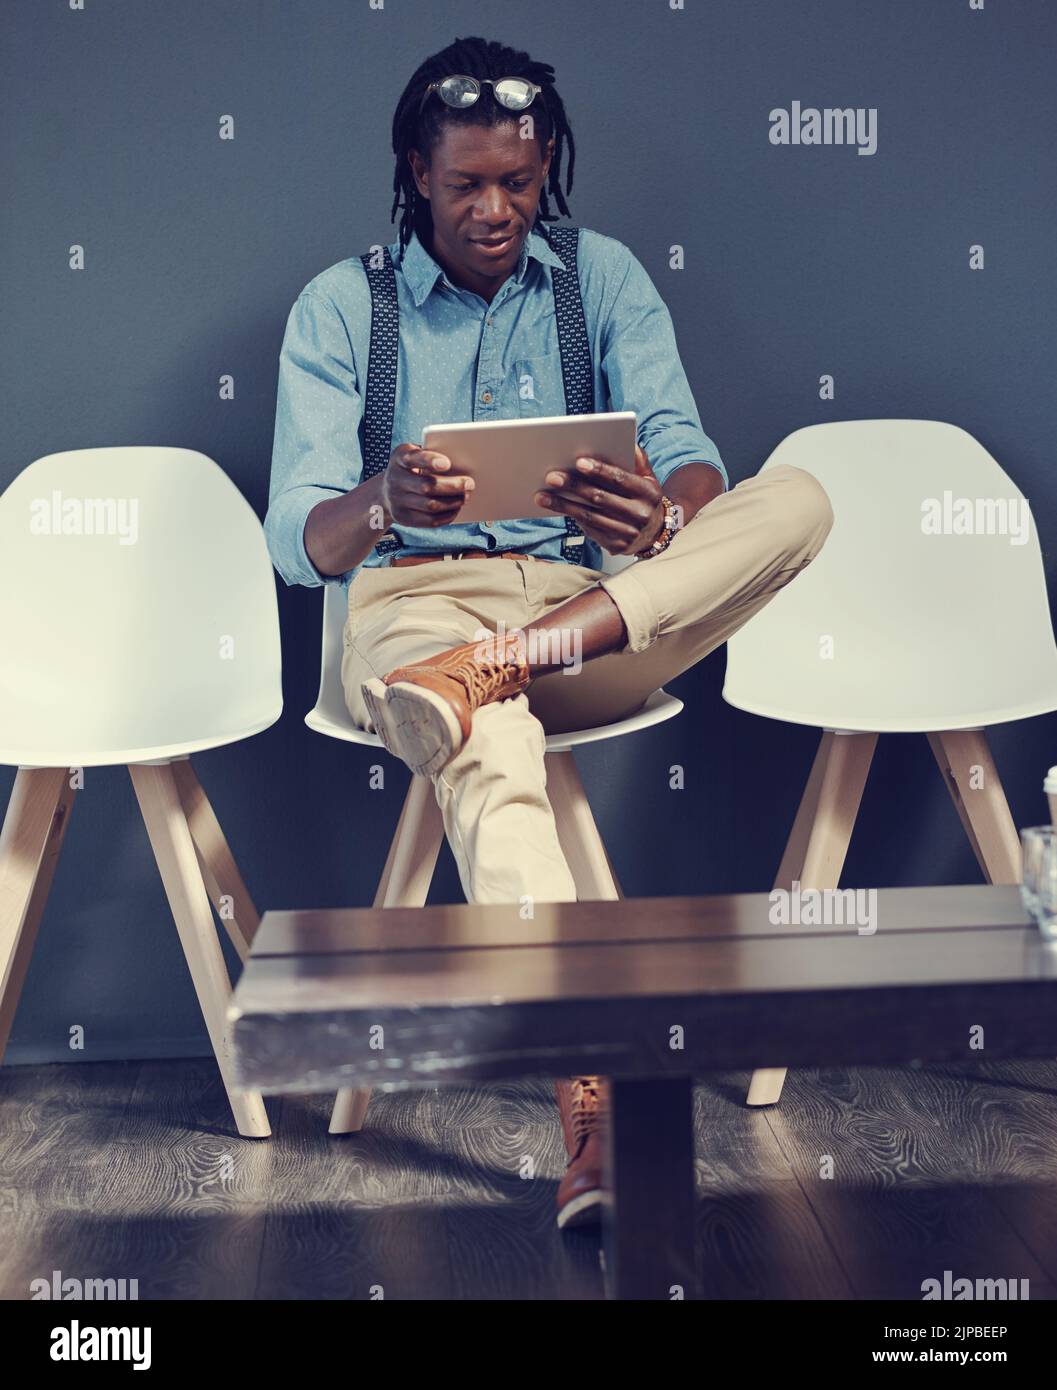 En regardant le site Web de l'entreprise. Un jeune homme d'affaires utilisant une tablette en attendant une interview. Banque D'Images